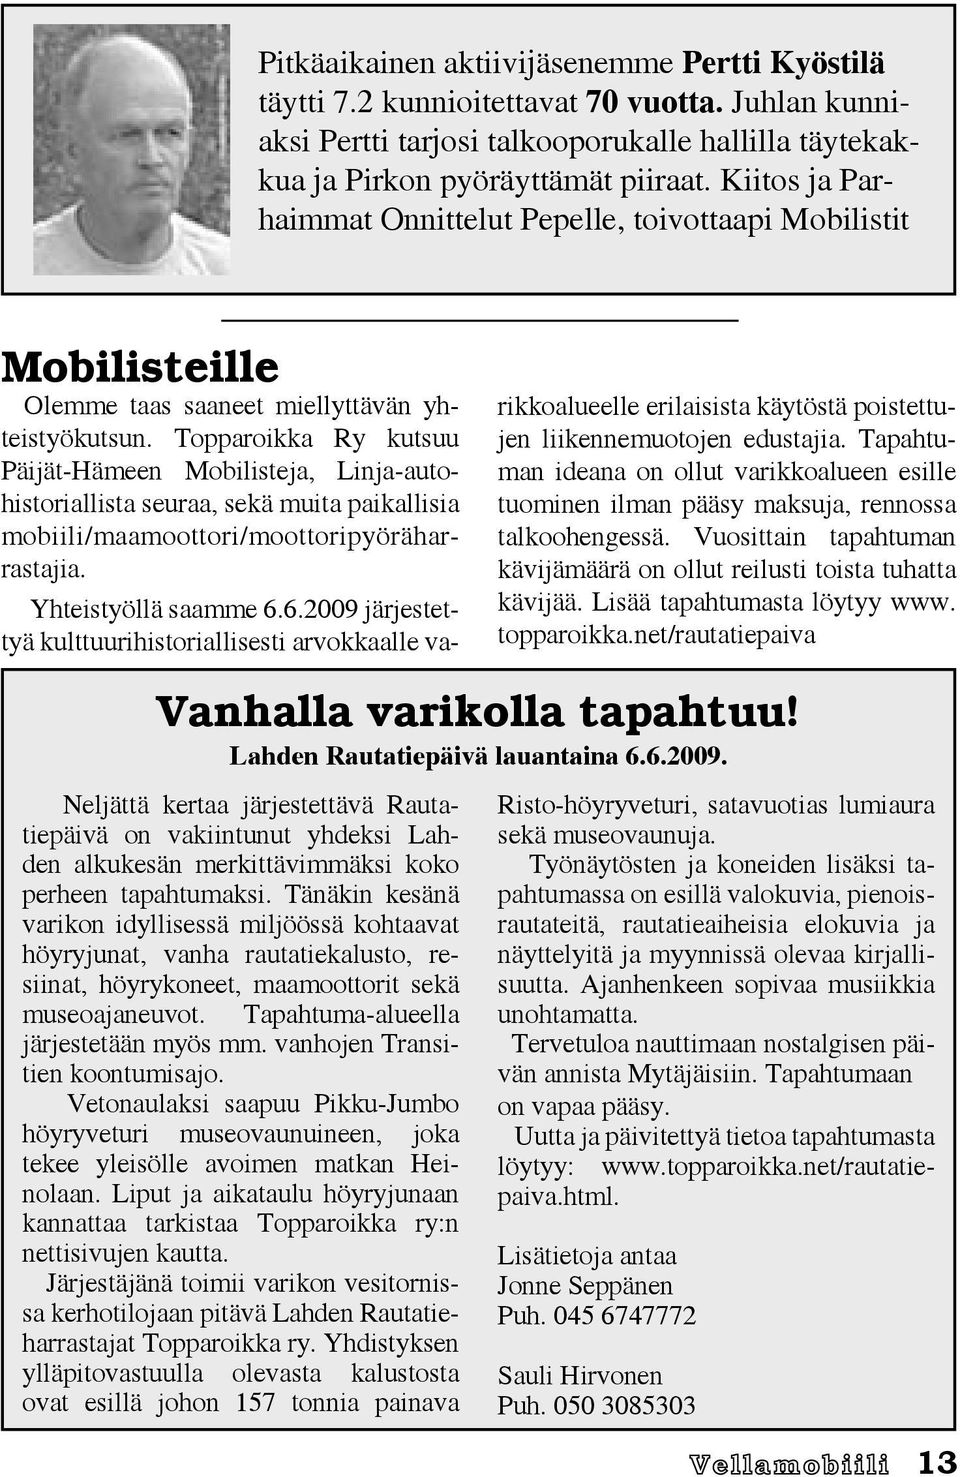 Topparoikka Ry kutsuu Päijät-Hämeen Mobilisteja, Linja-autohistoriallista seuraa, sekä muita paikallisia mobiili/maamoottori/moottoripyöräharrastajia. Yhteistyöllä saamme 6.